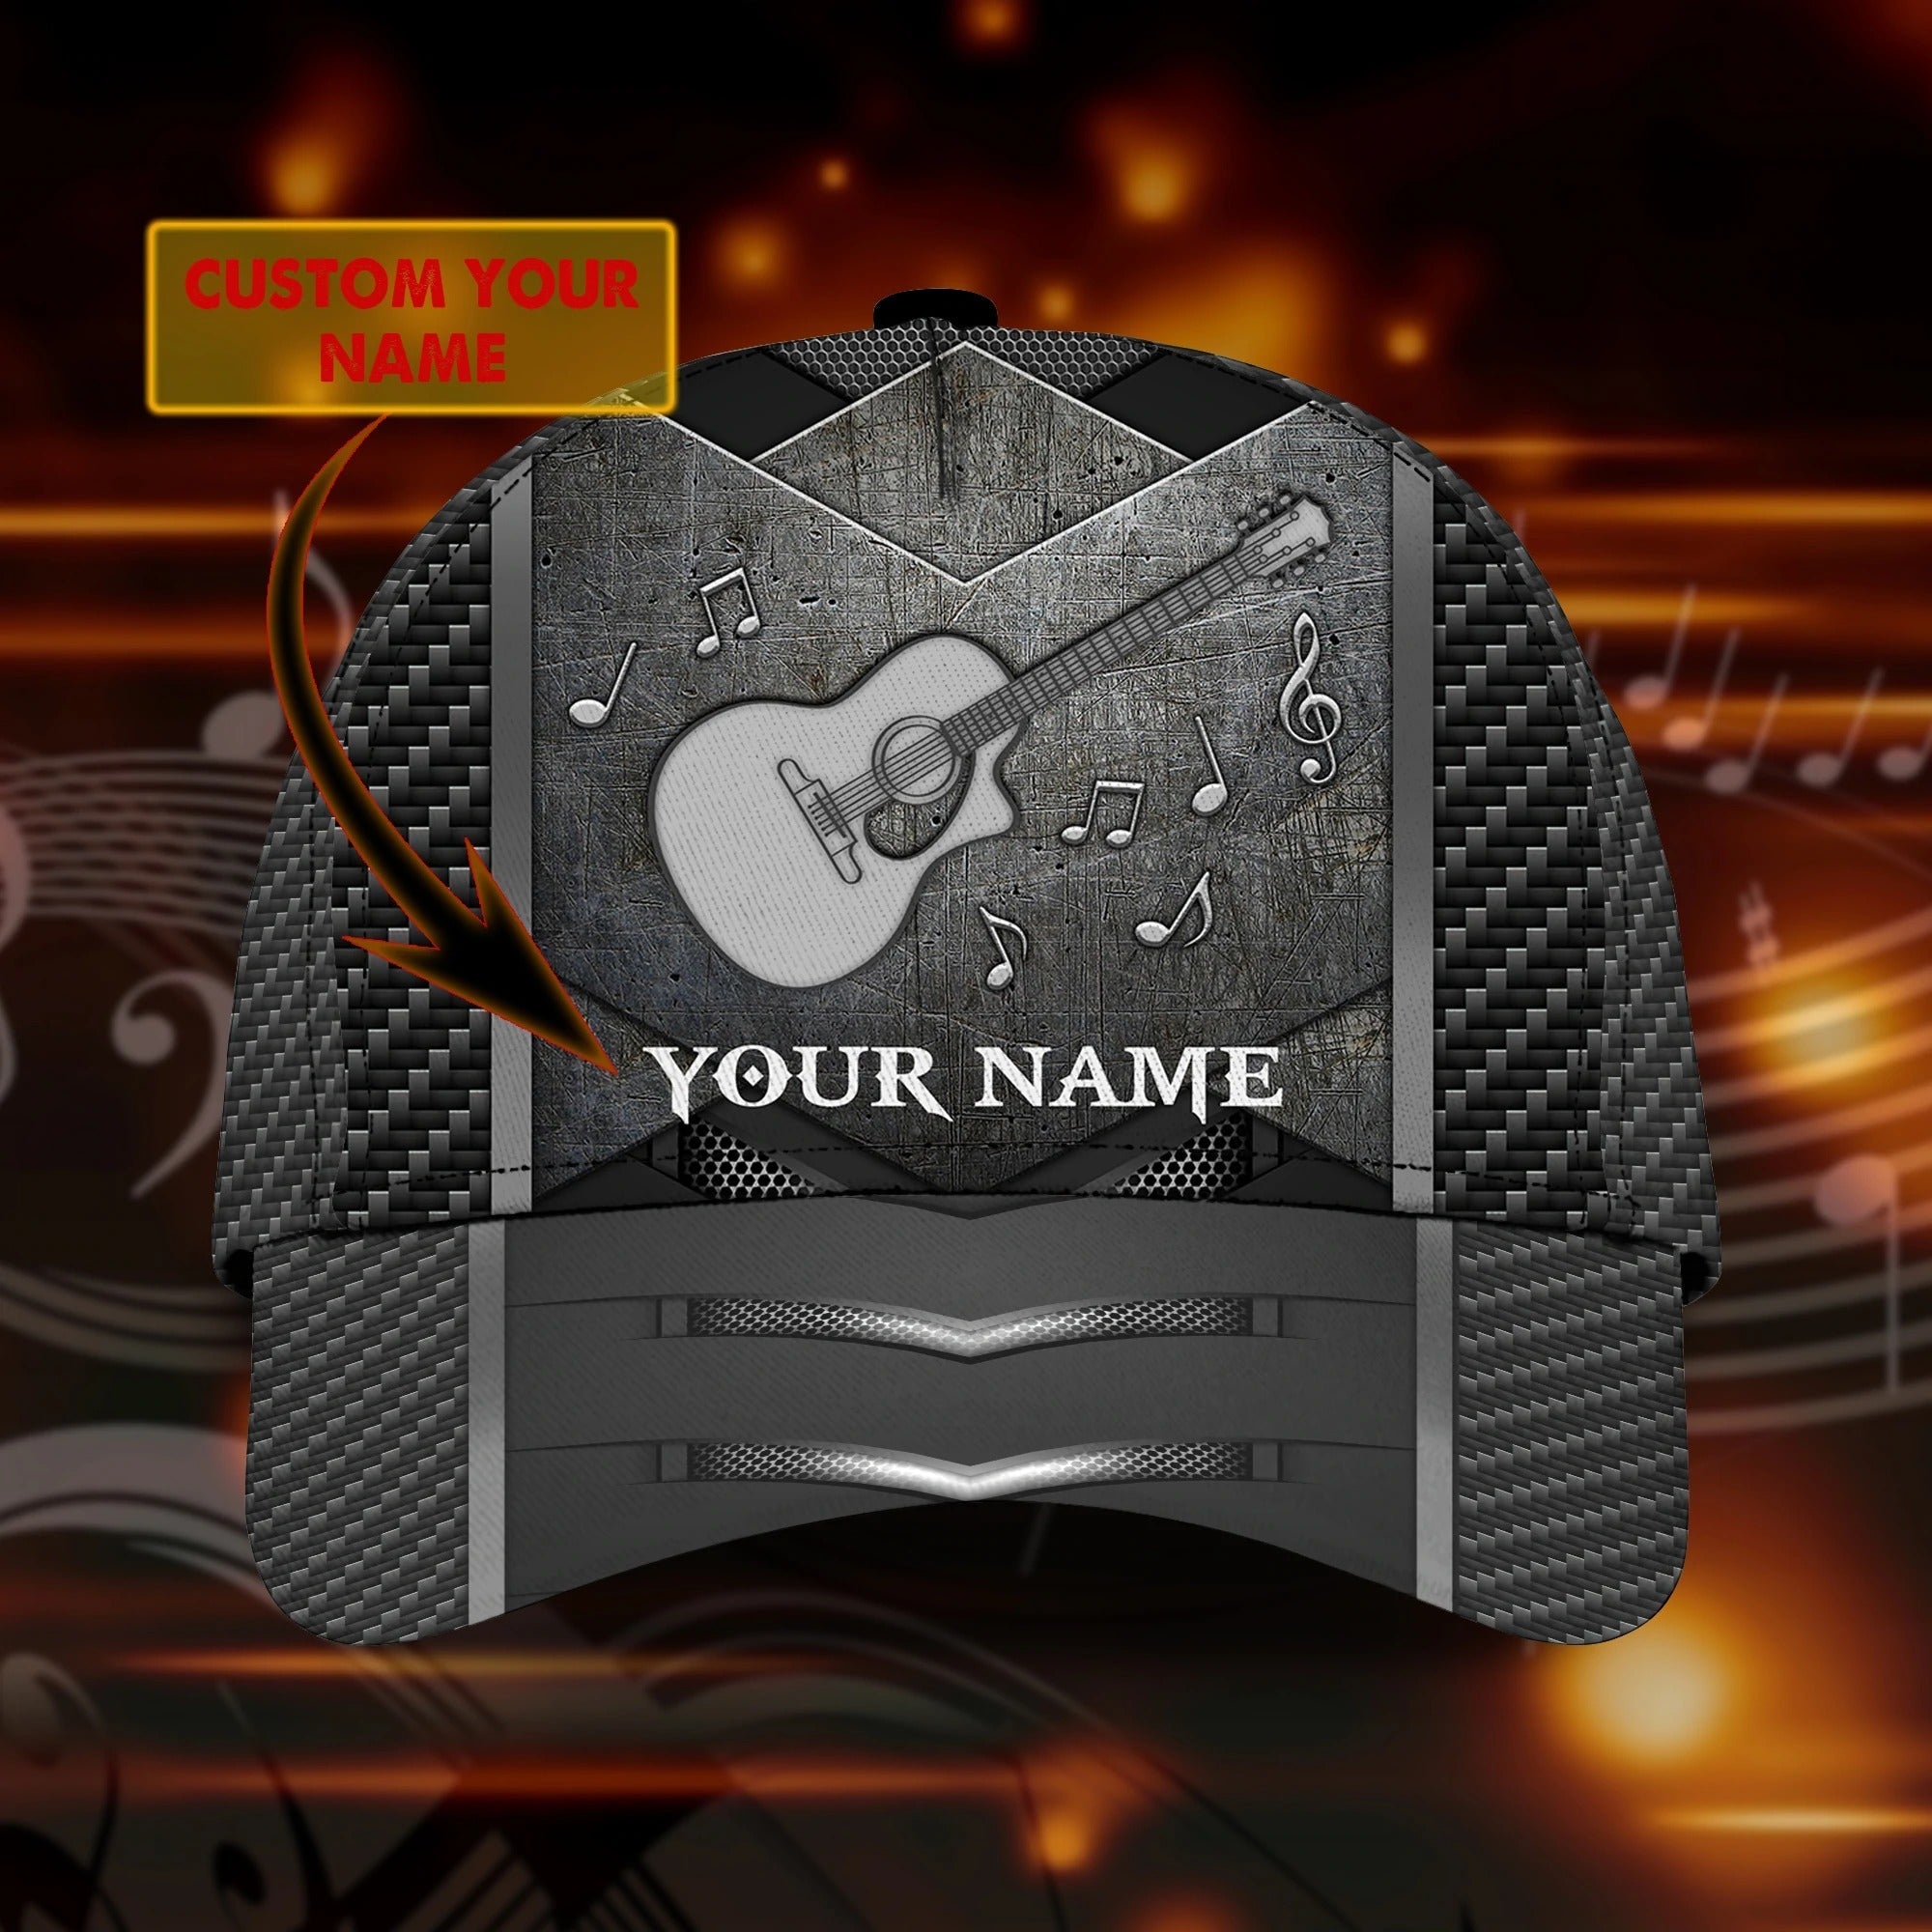 Personalized Classic 3D Guitar Cap/ Love Guitar/ Baseball Cap For Guitar Man/ Gift For Guitar Lover